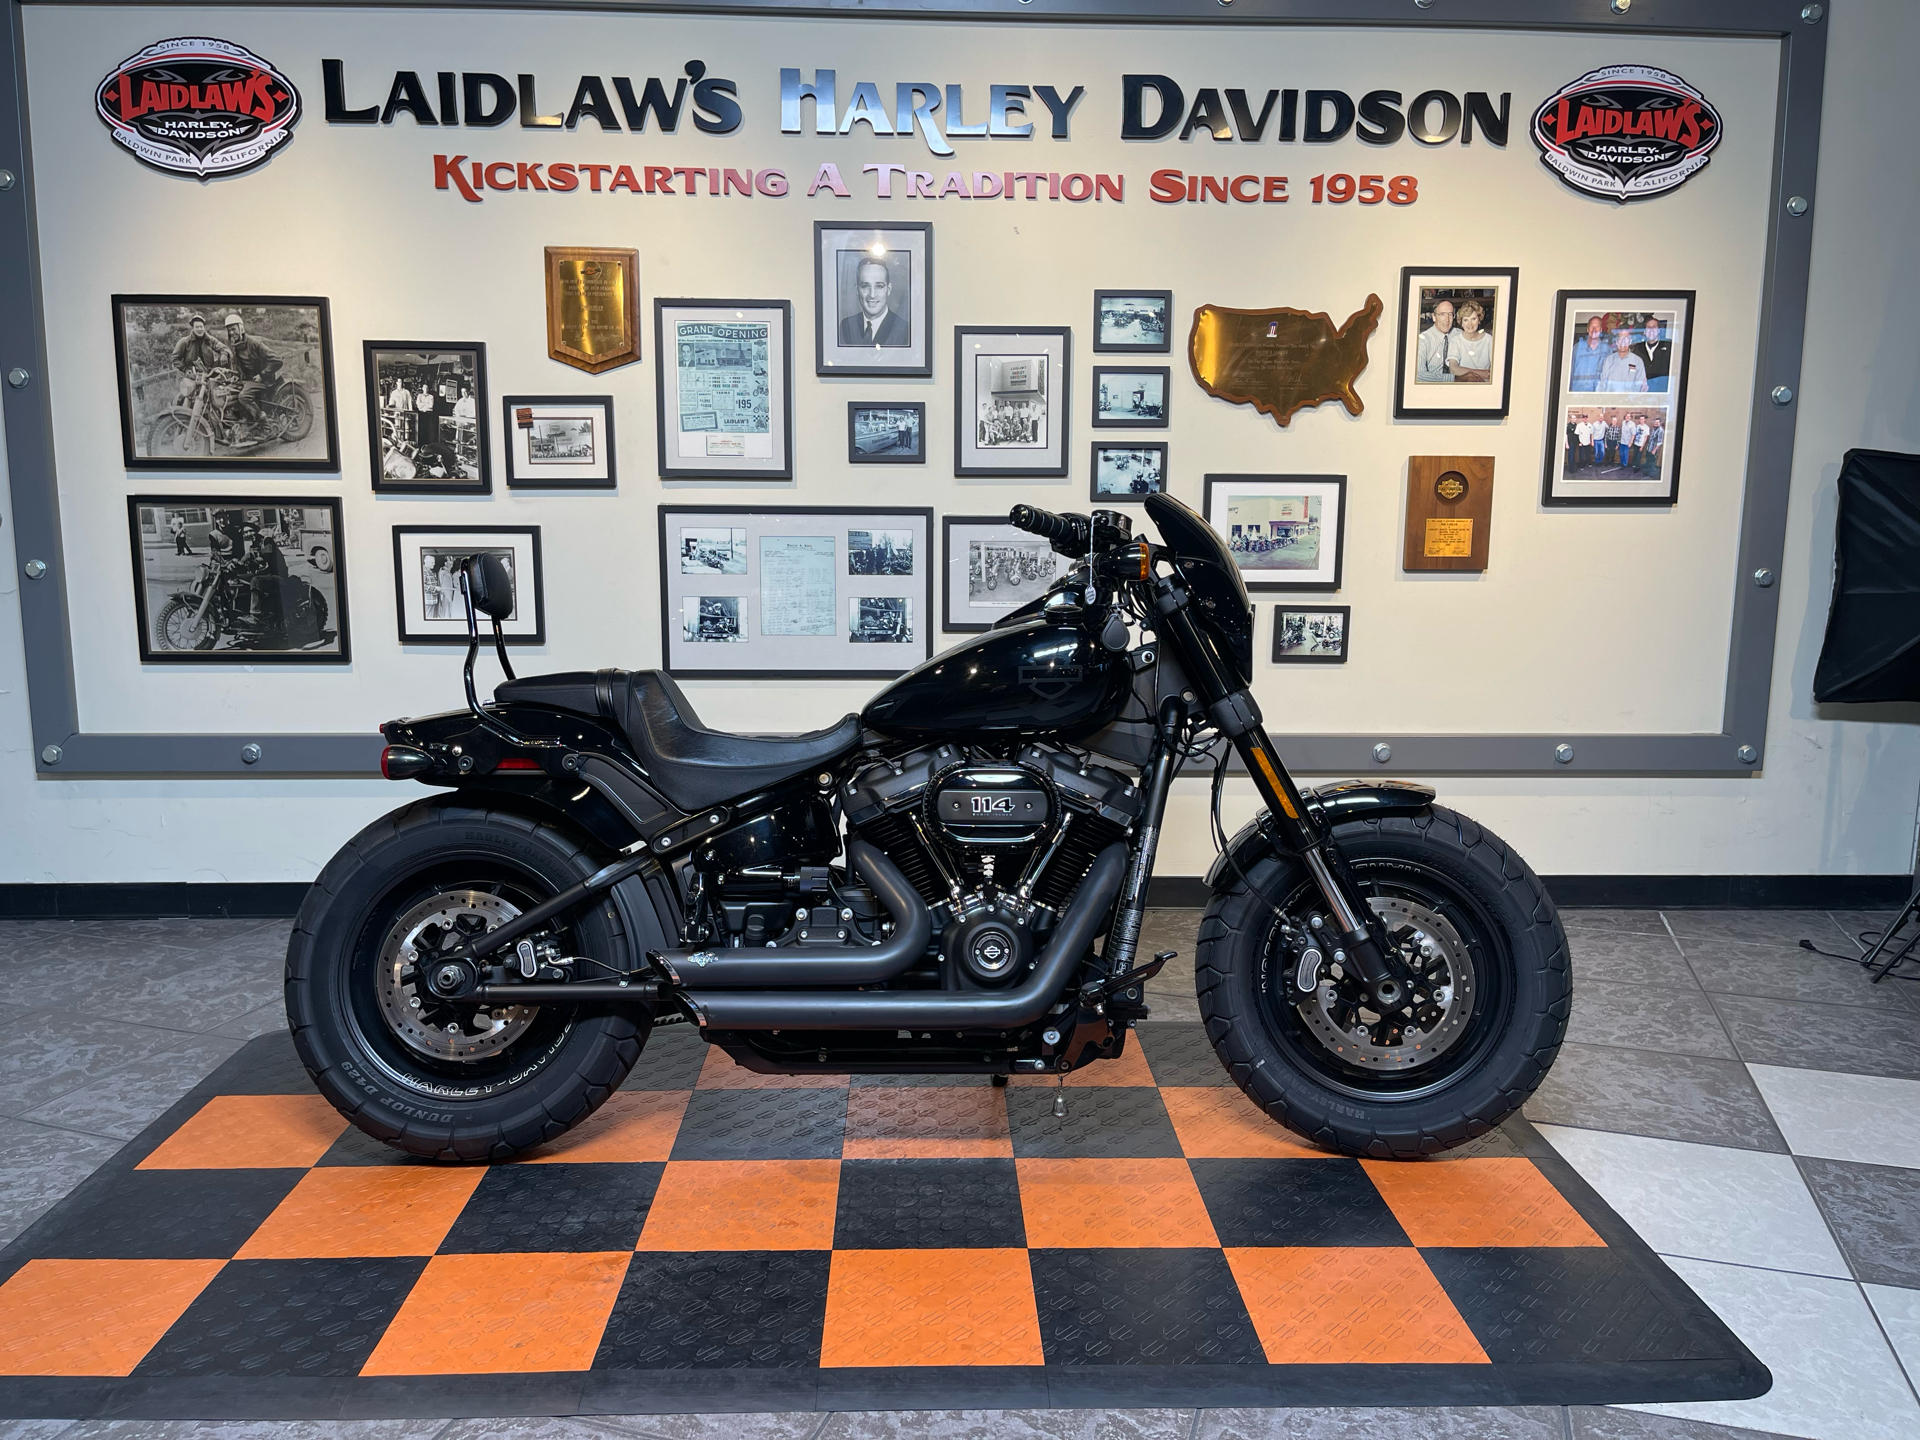 2018 Harley-Davidson Fat Bob® 114 in Baldwin Park, California - Photo 1